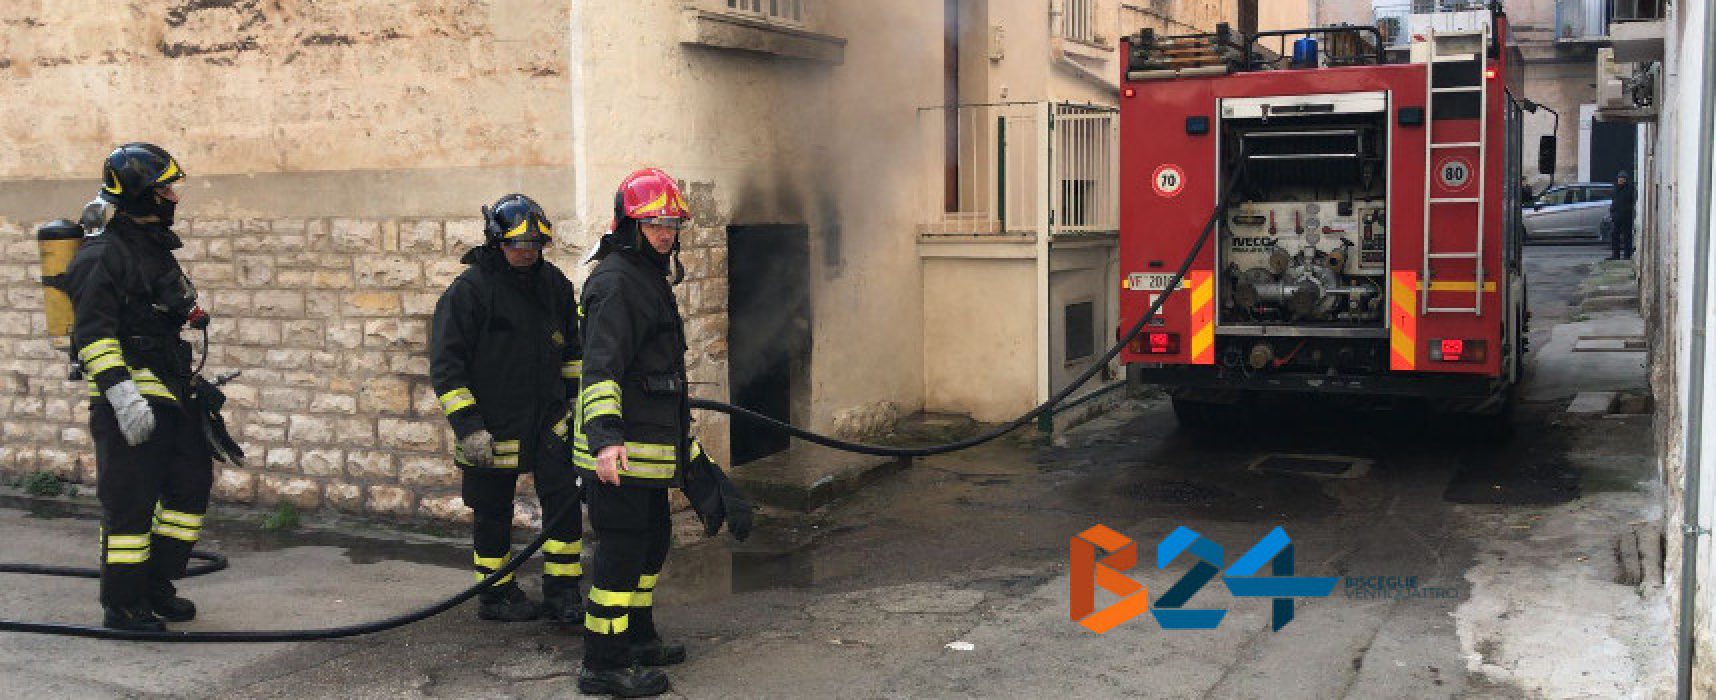 Paura in zona San Pietro: fiamme in cantina, nessun ferito /VIDEO